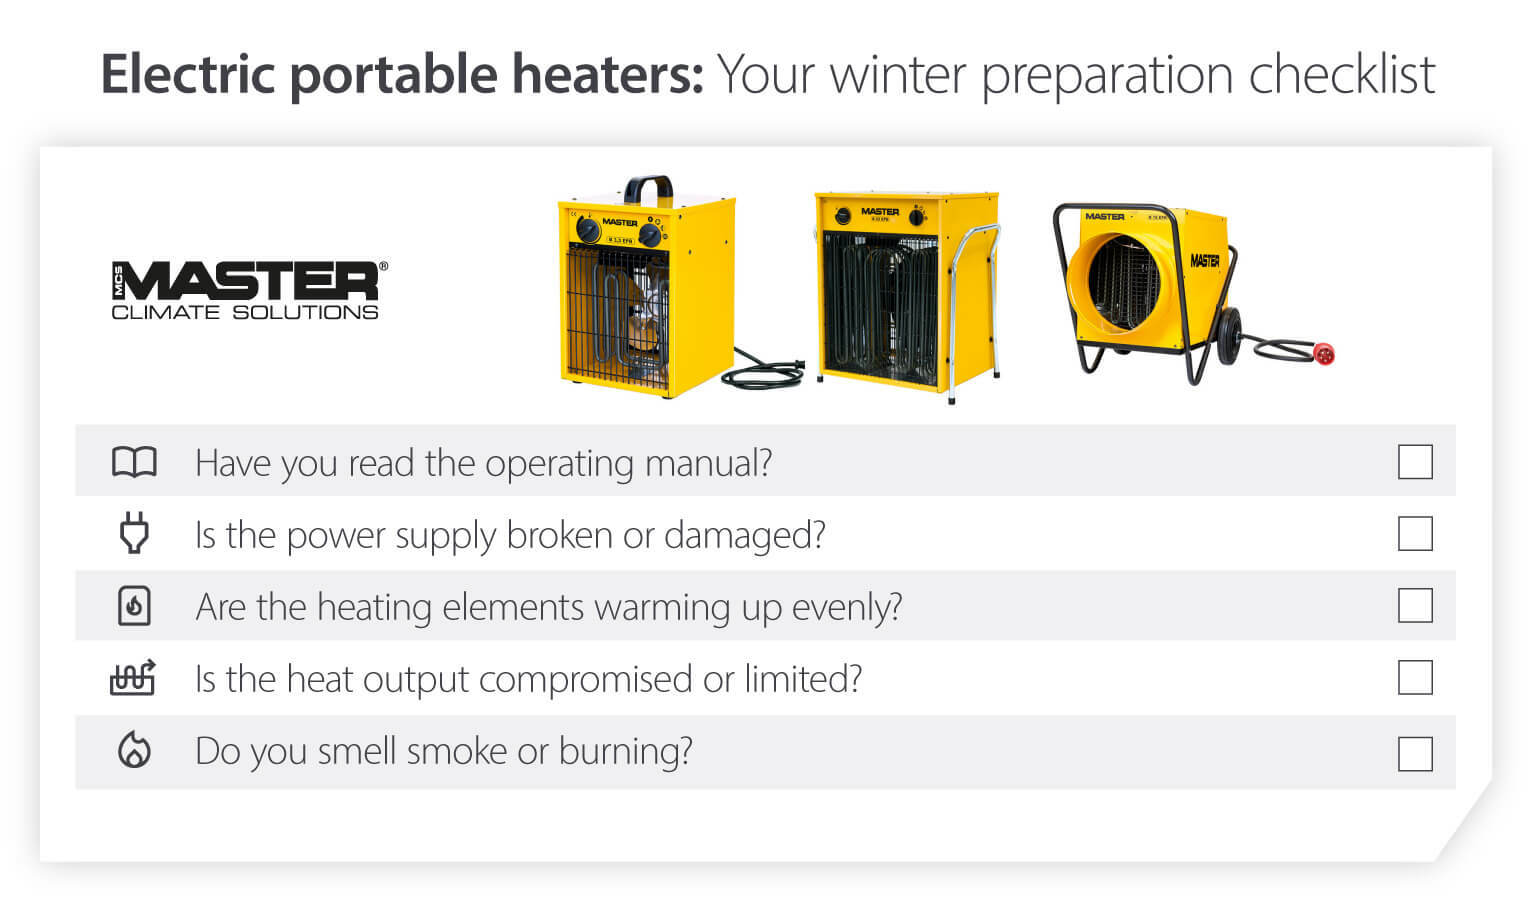 Vintertjekliste for transportable elektriske varmeapparater – klargøring af varmeenhed til kolde temperaturer – Infografikbillede